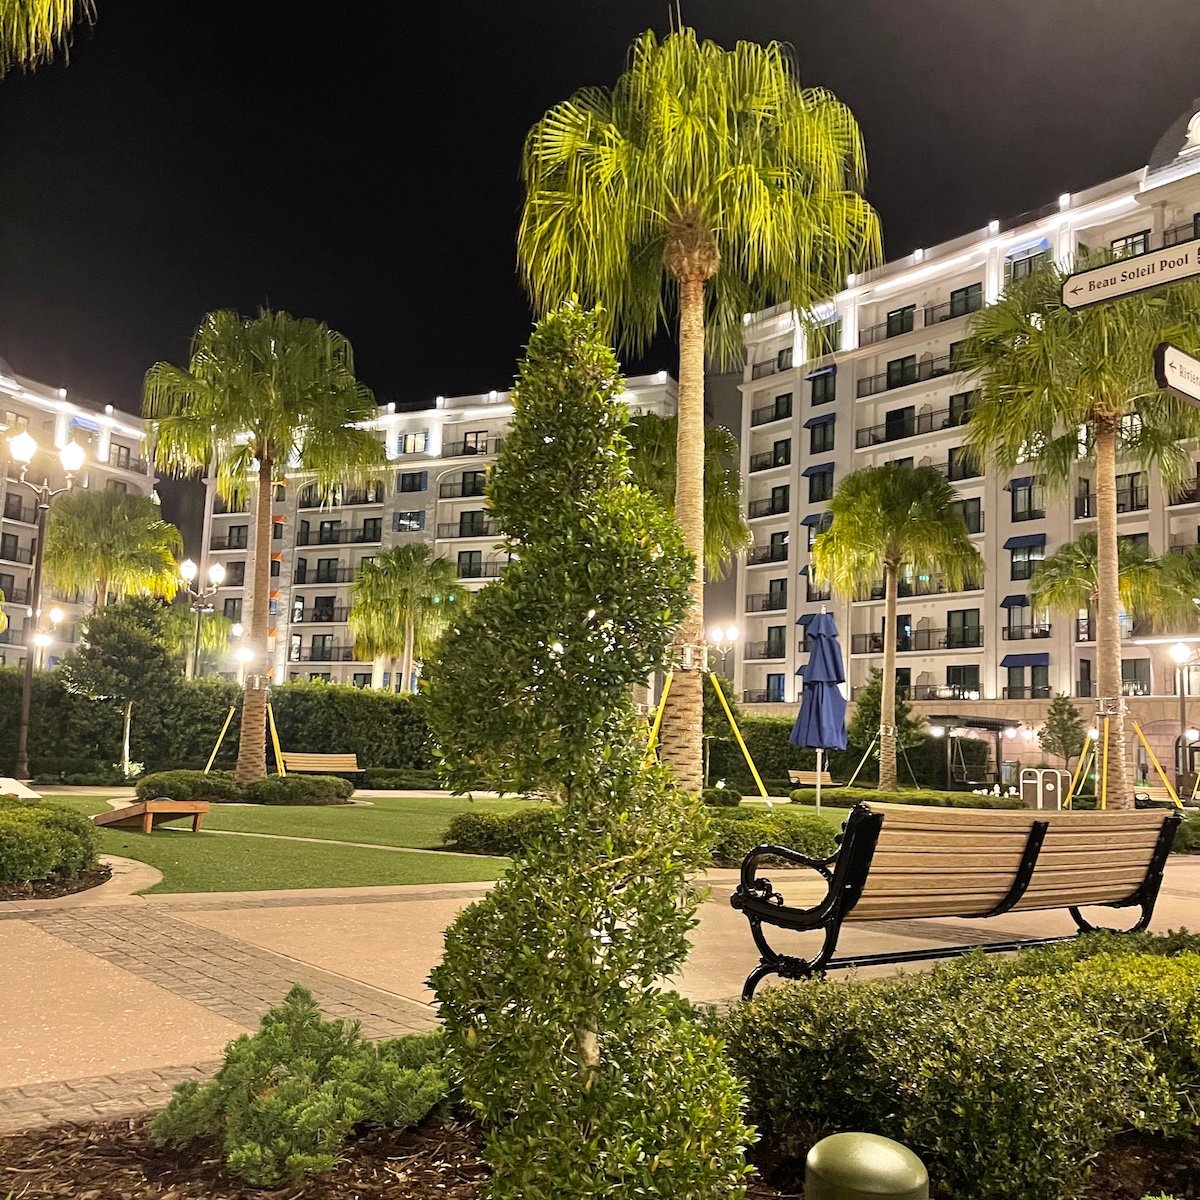 Riviera Resort at Night